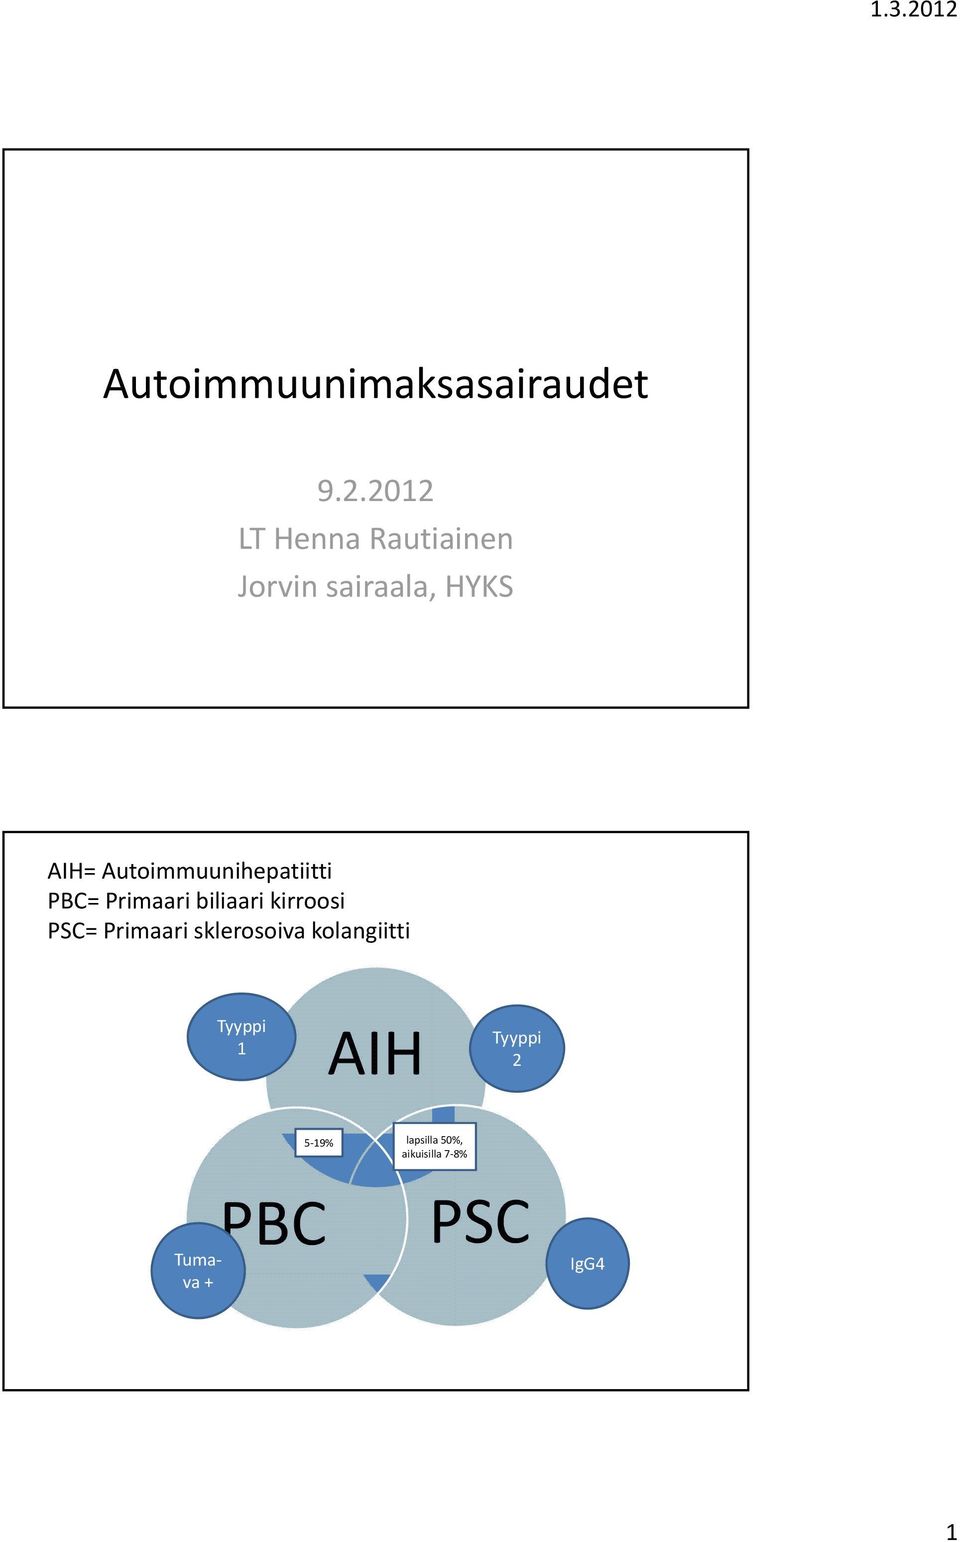 Autoimmuunihepatiitti PBC= Primaari biliaari kirroosi PSC=